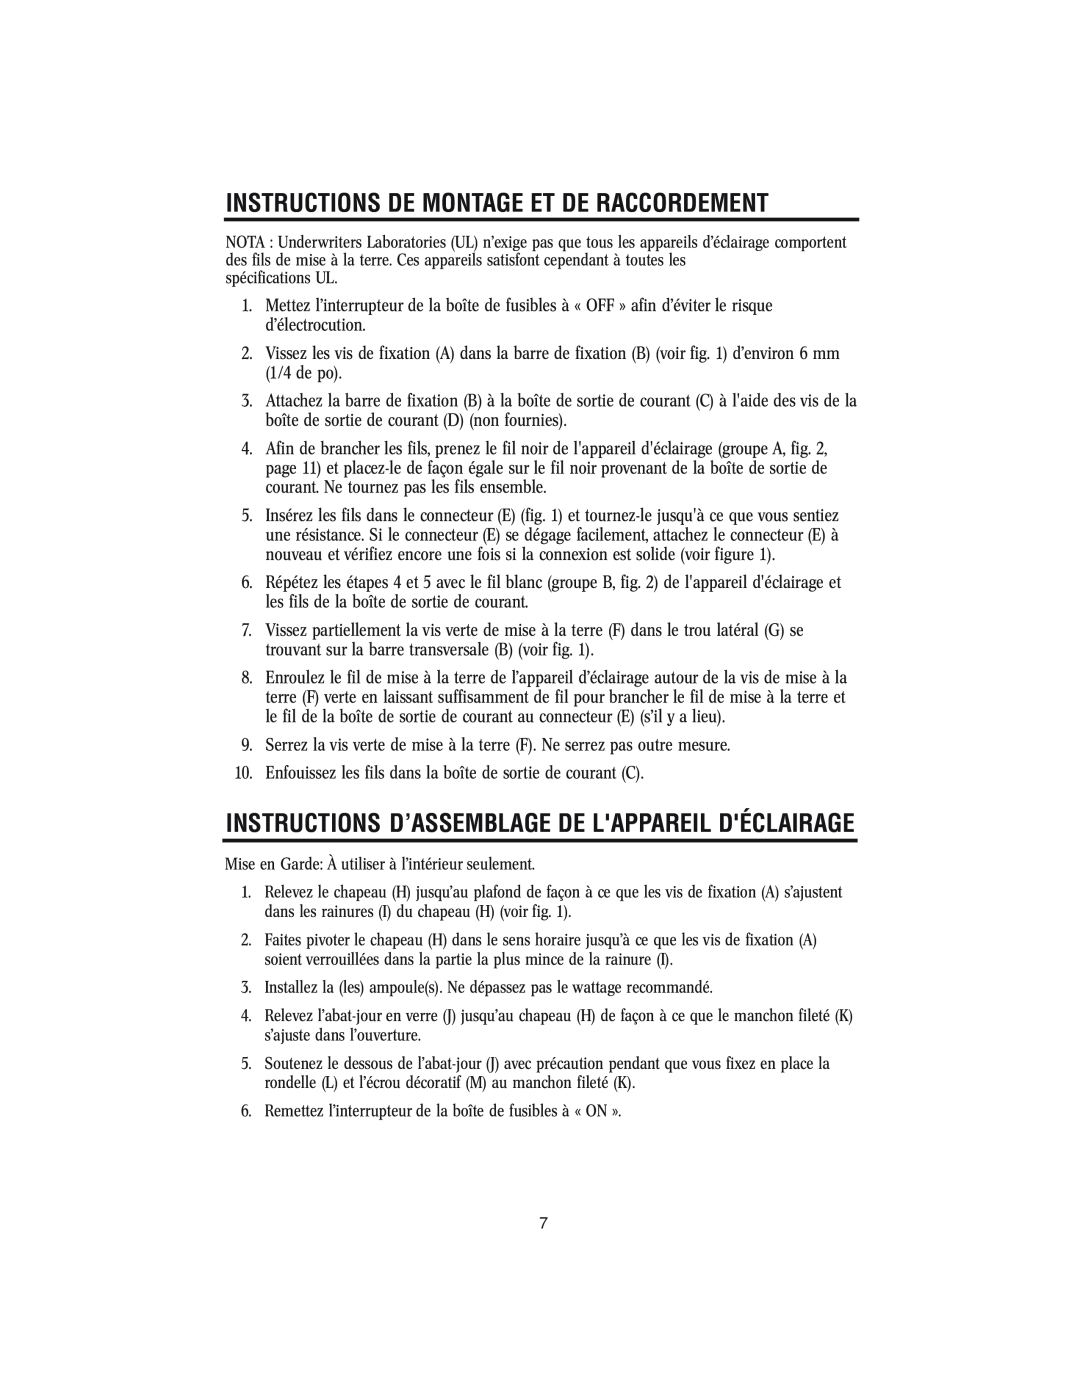 Westinghouse W-145 Instructions D’Assemblage De Lappareil Déclairage, Instructions De Montage Et De Raccordement 